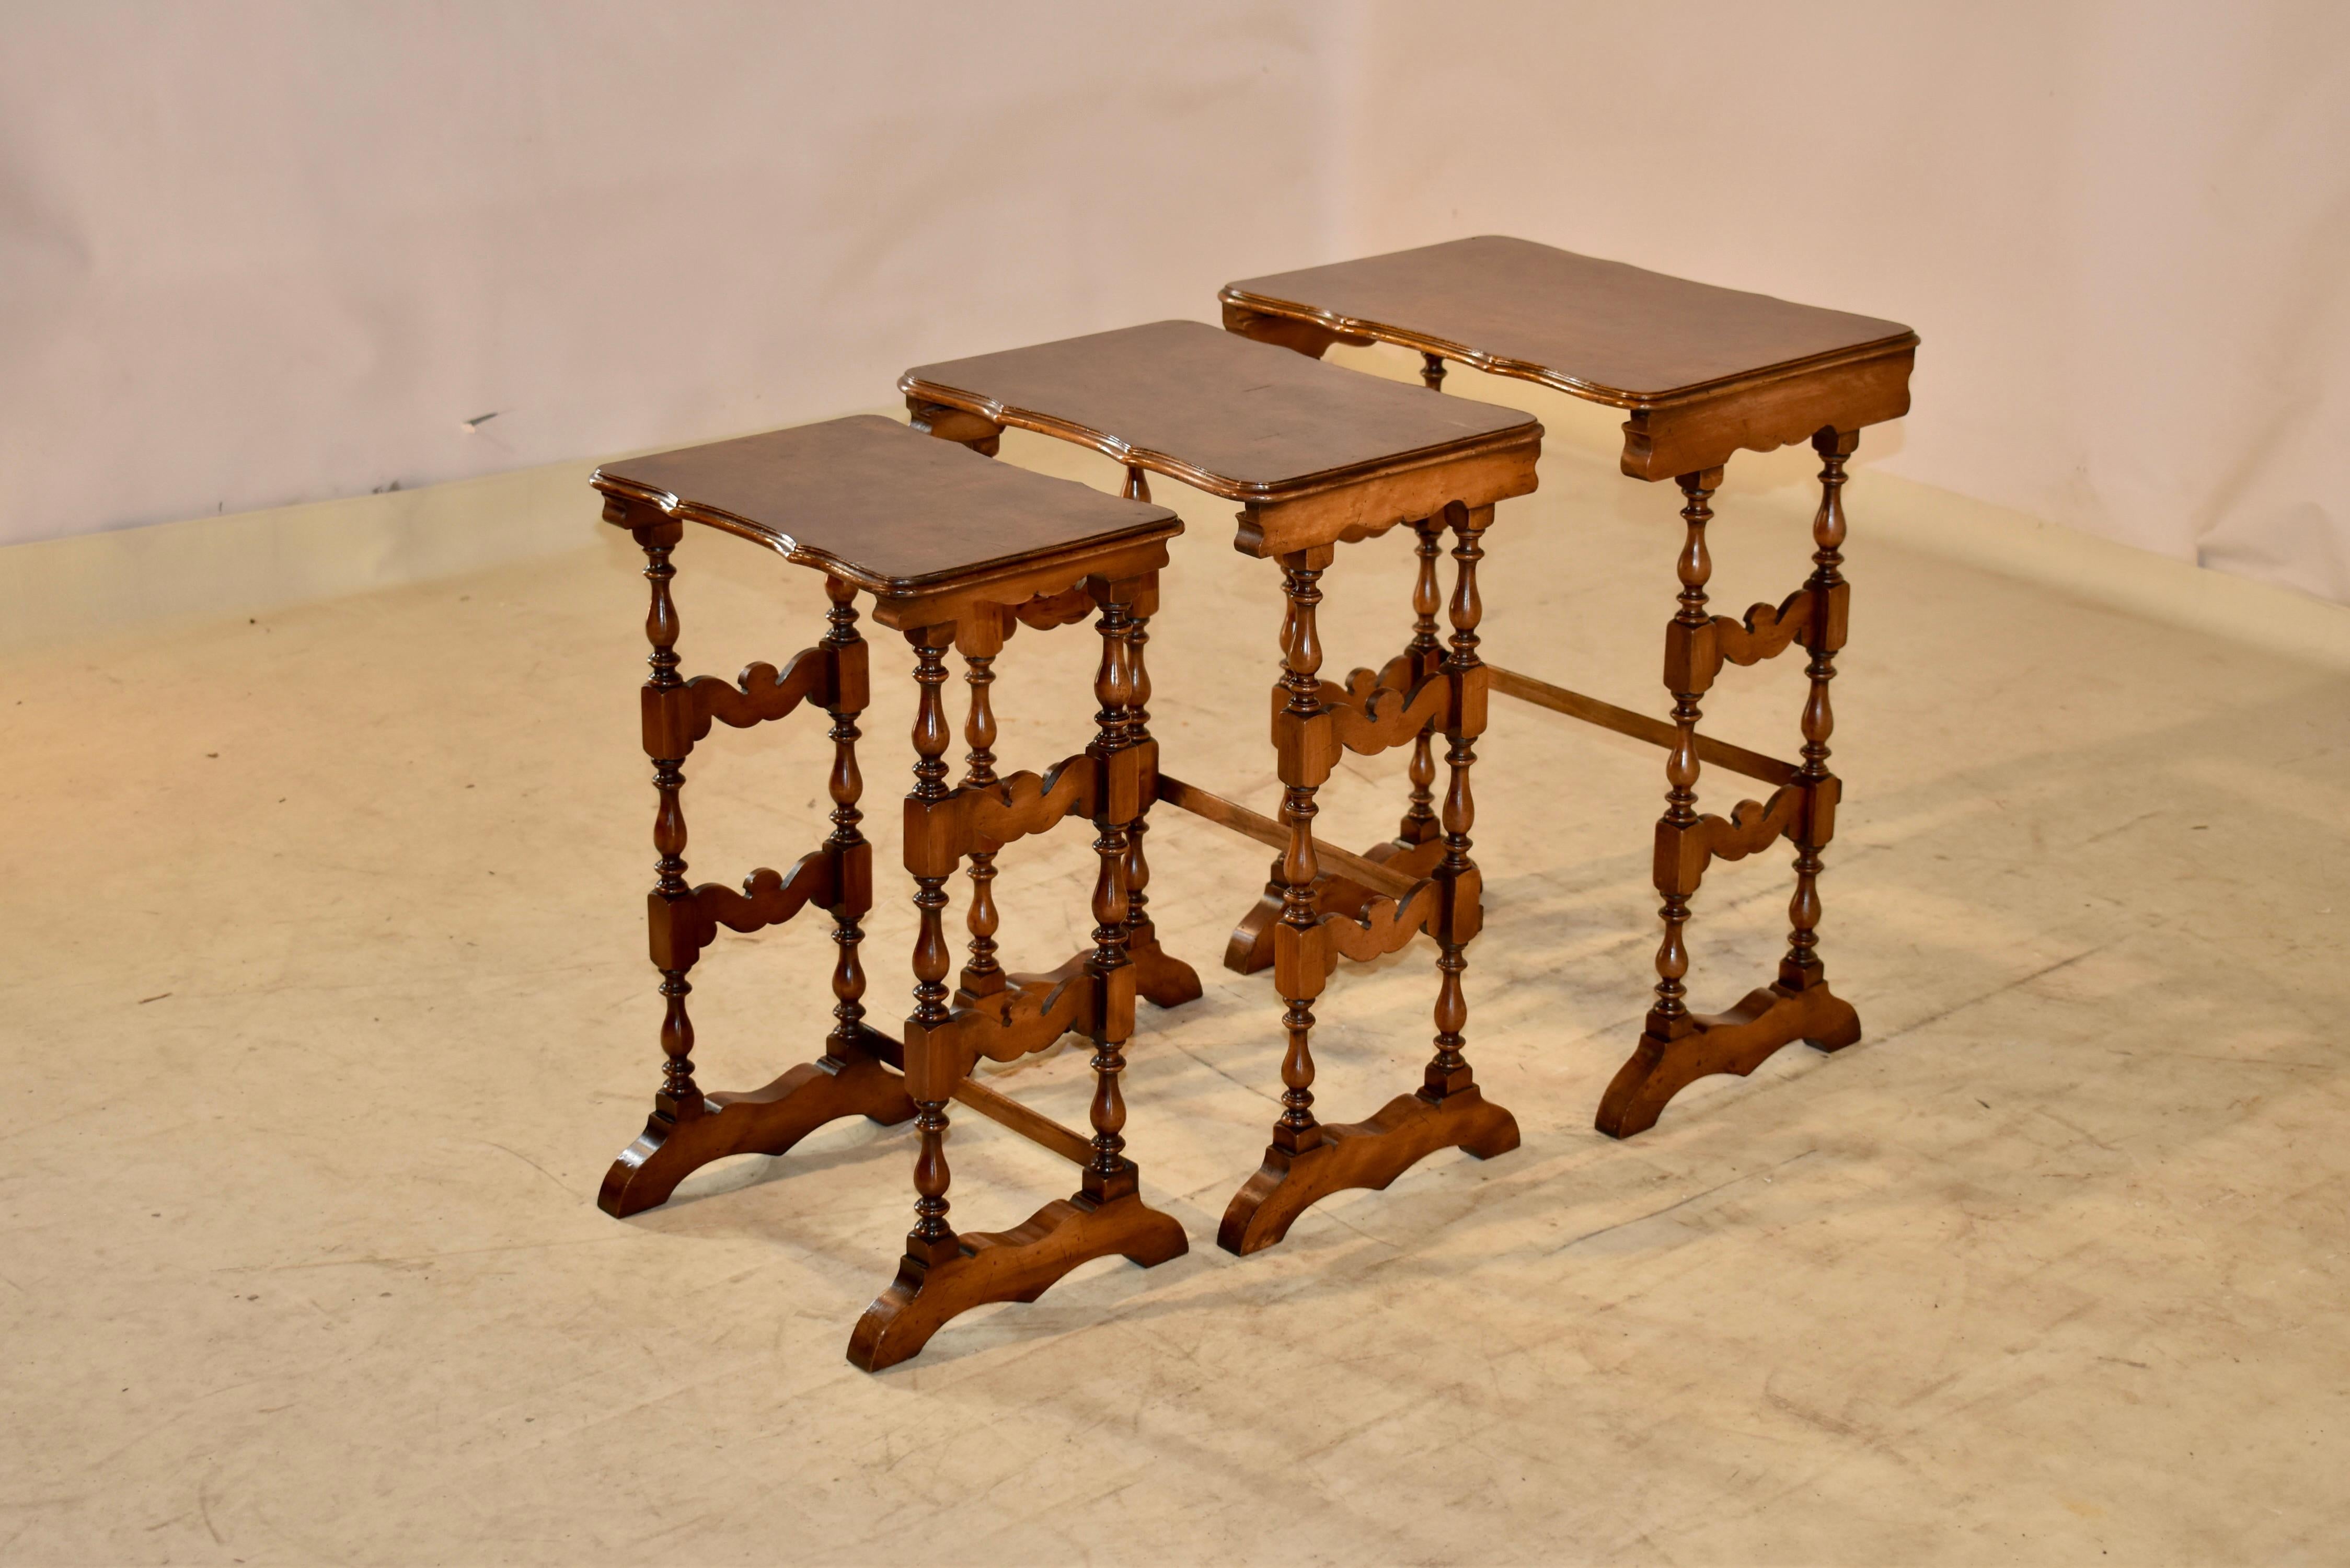 Ensemble de trois tables d'appoint gigognes du 19e siècle en provenance d'Angleterre.  Les tables ont des plateaux en ronce de noyer avec des bords festonnés et biseautés à l'avant et à l'arrière pour ajouter des détails au design.  Les tables